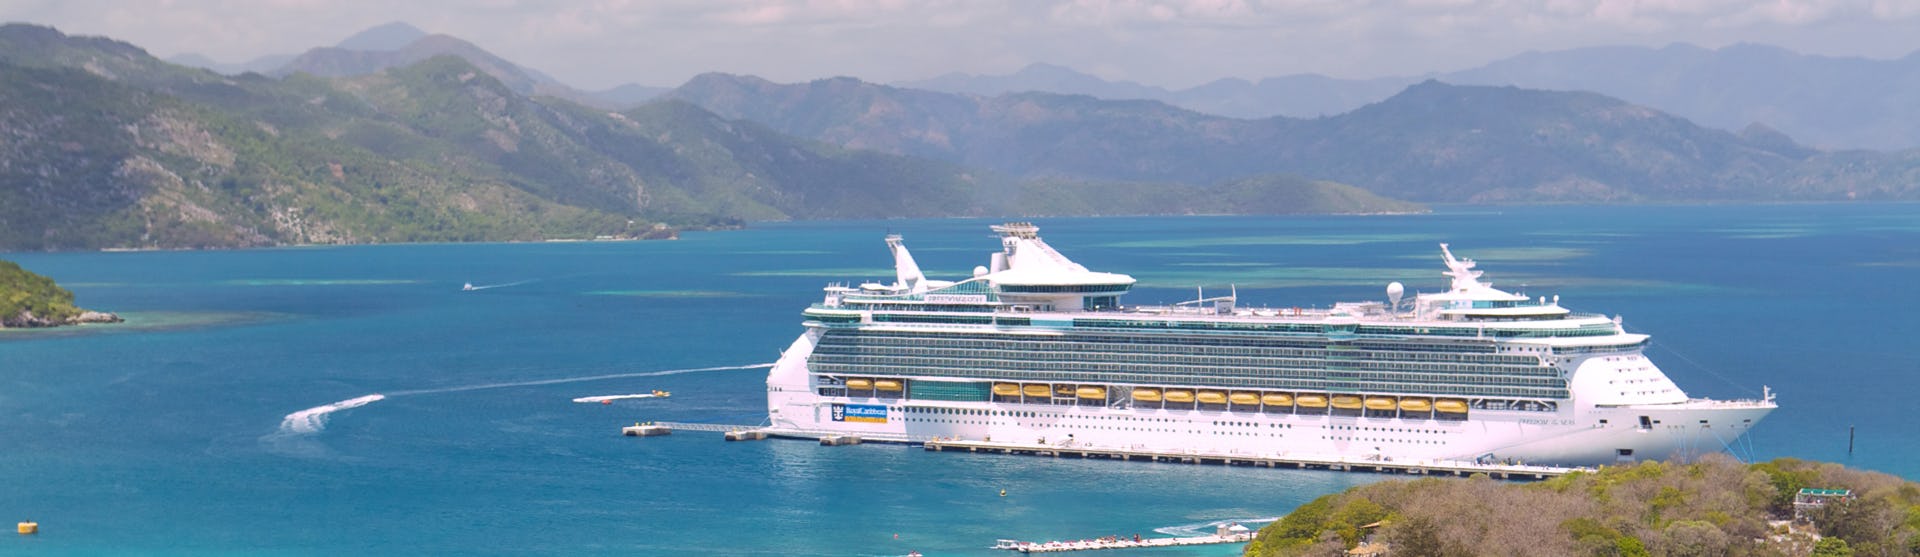 Fartyget Freedom of the Seas ligger vid en hamn i Karibien med ljusblått vatten och höga berg i bakgrunden.